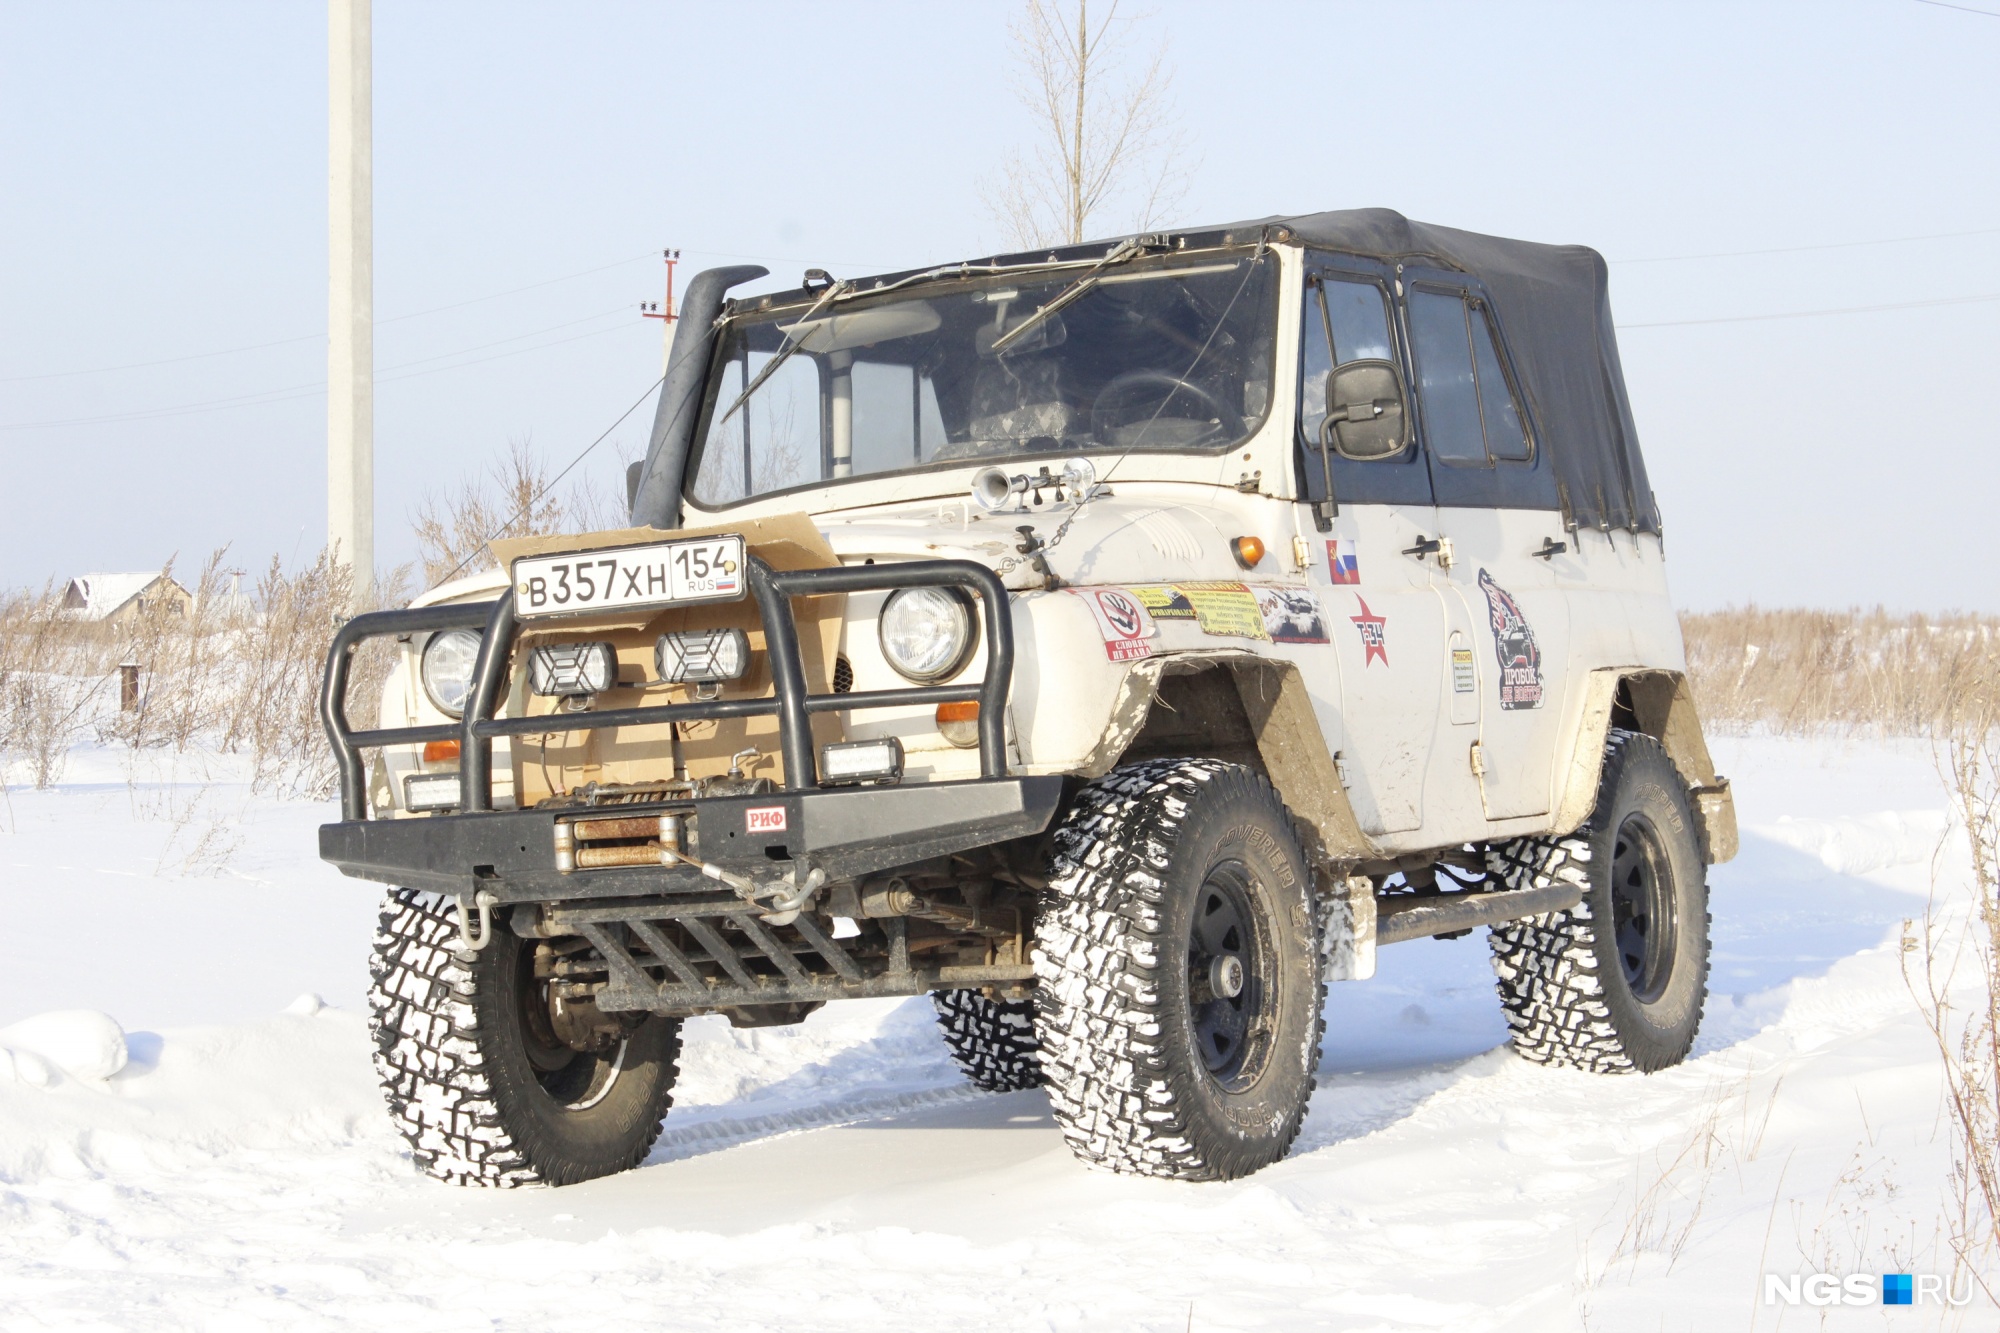 Сибиряк переделал 30-летний УАЗ — огромные колеса и мотор от «буханки». Теперь спасает застрявшие «Крузеры» и «Прадики»